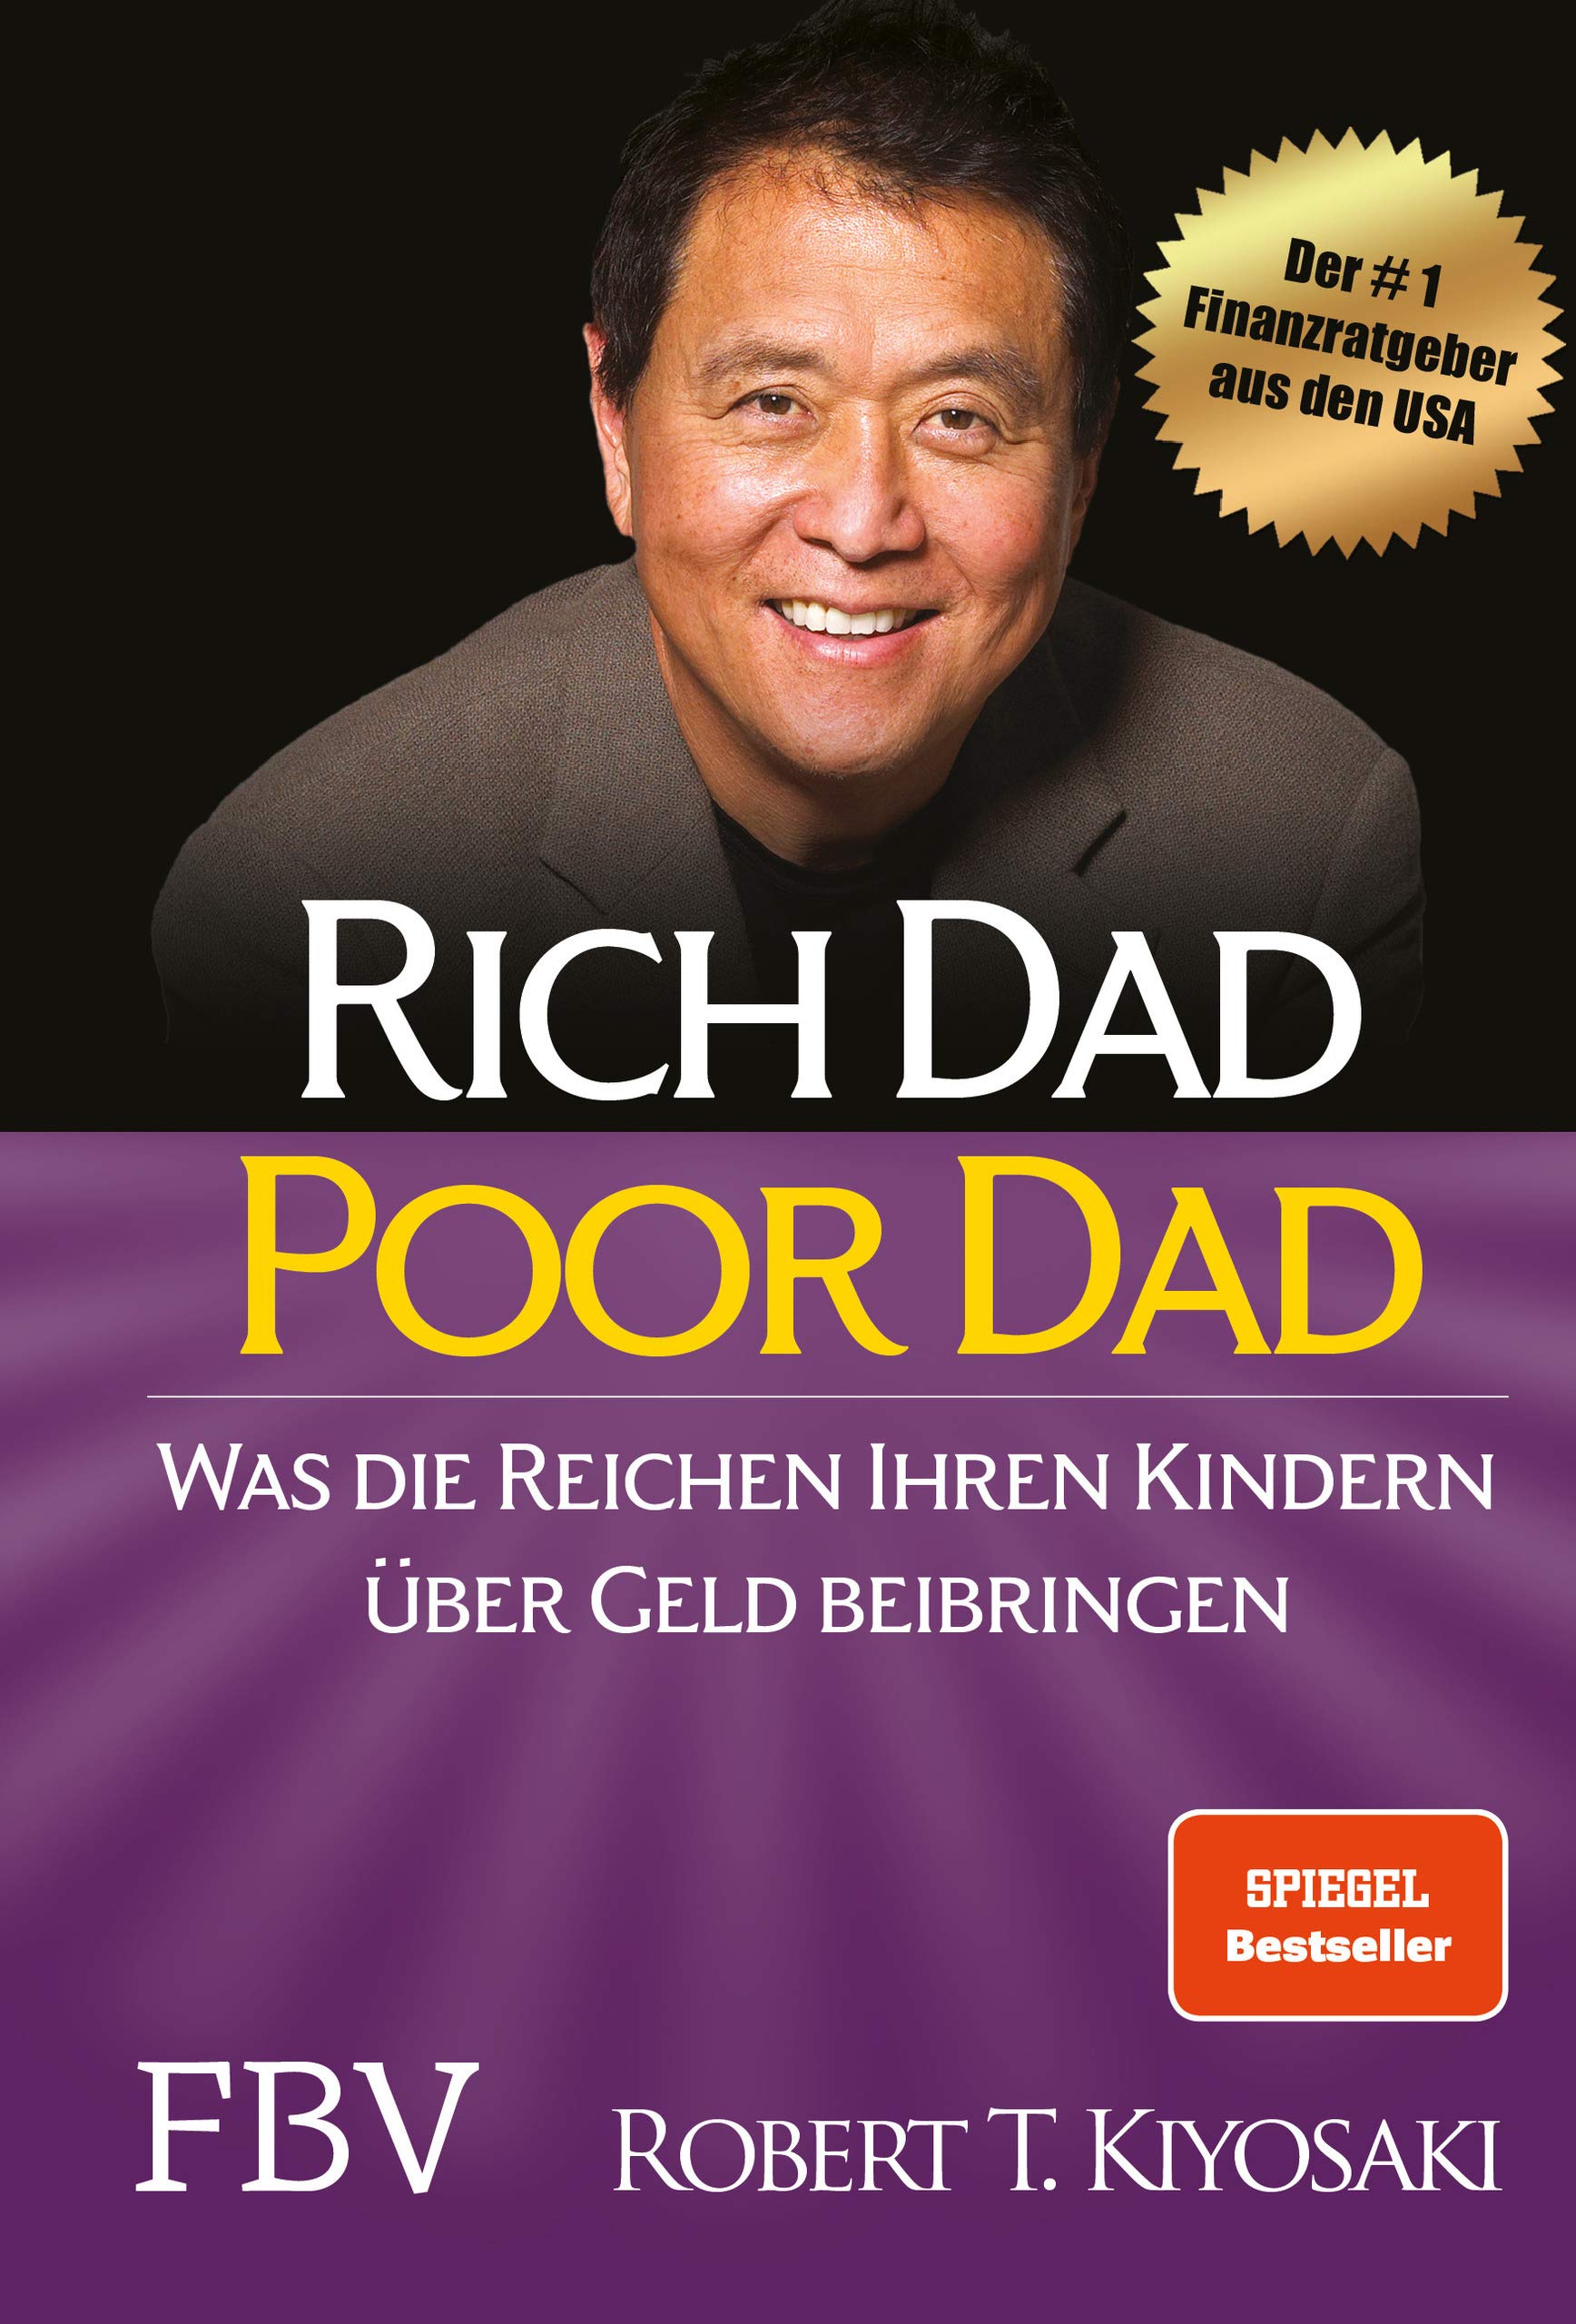 Rich Dad Poor Dad: Was die Reichen ihren Kindern über Geld beibringen von Robert T. Kiyosaki